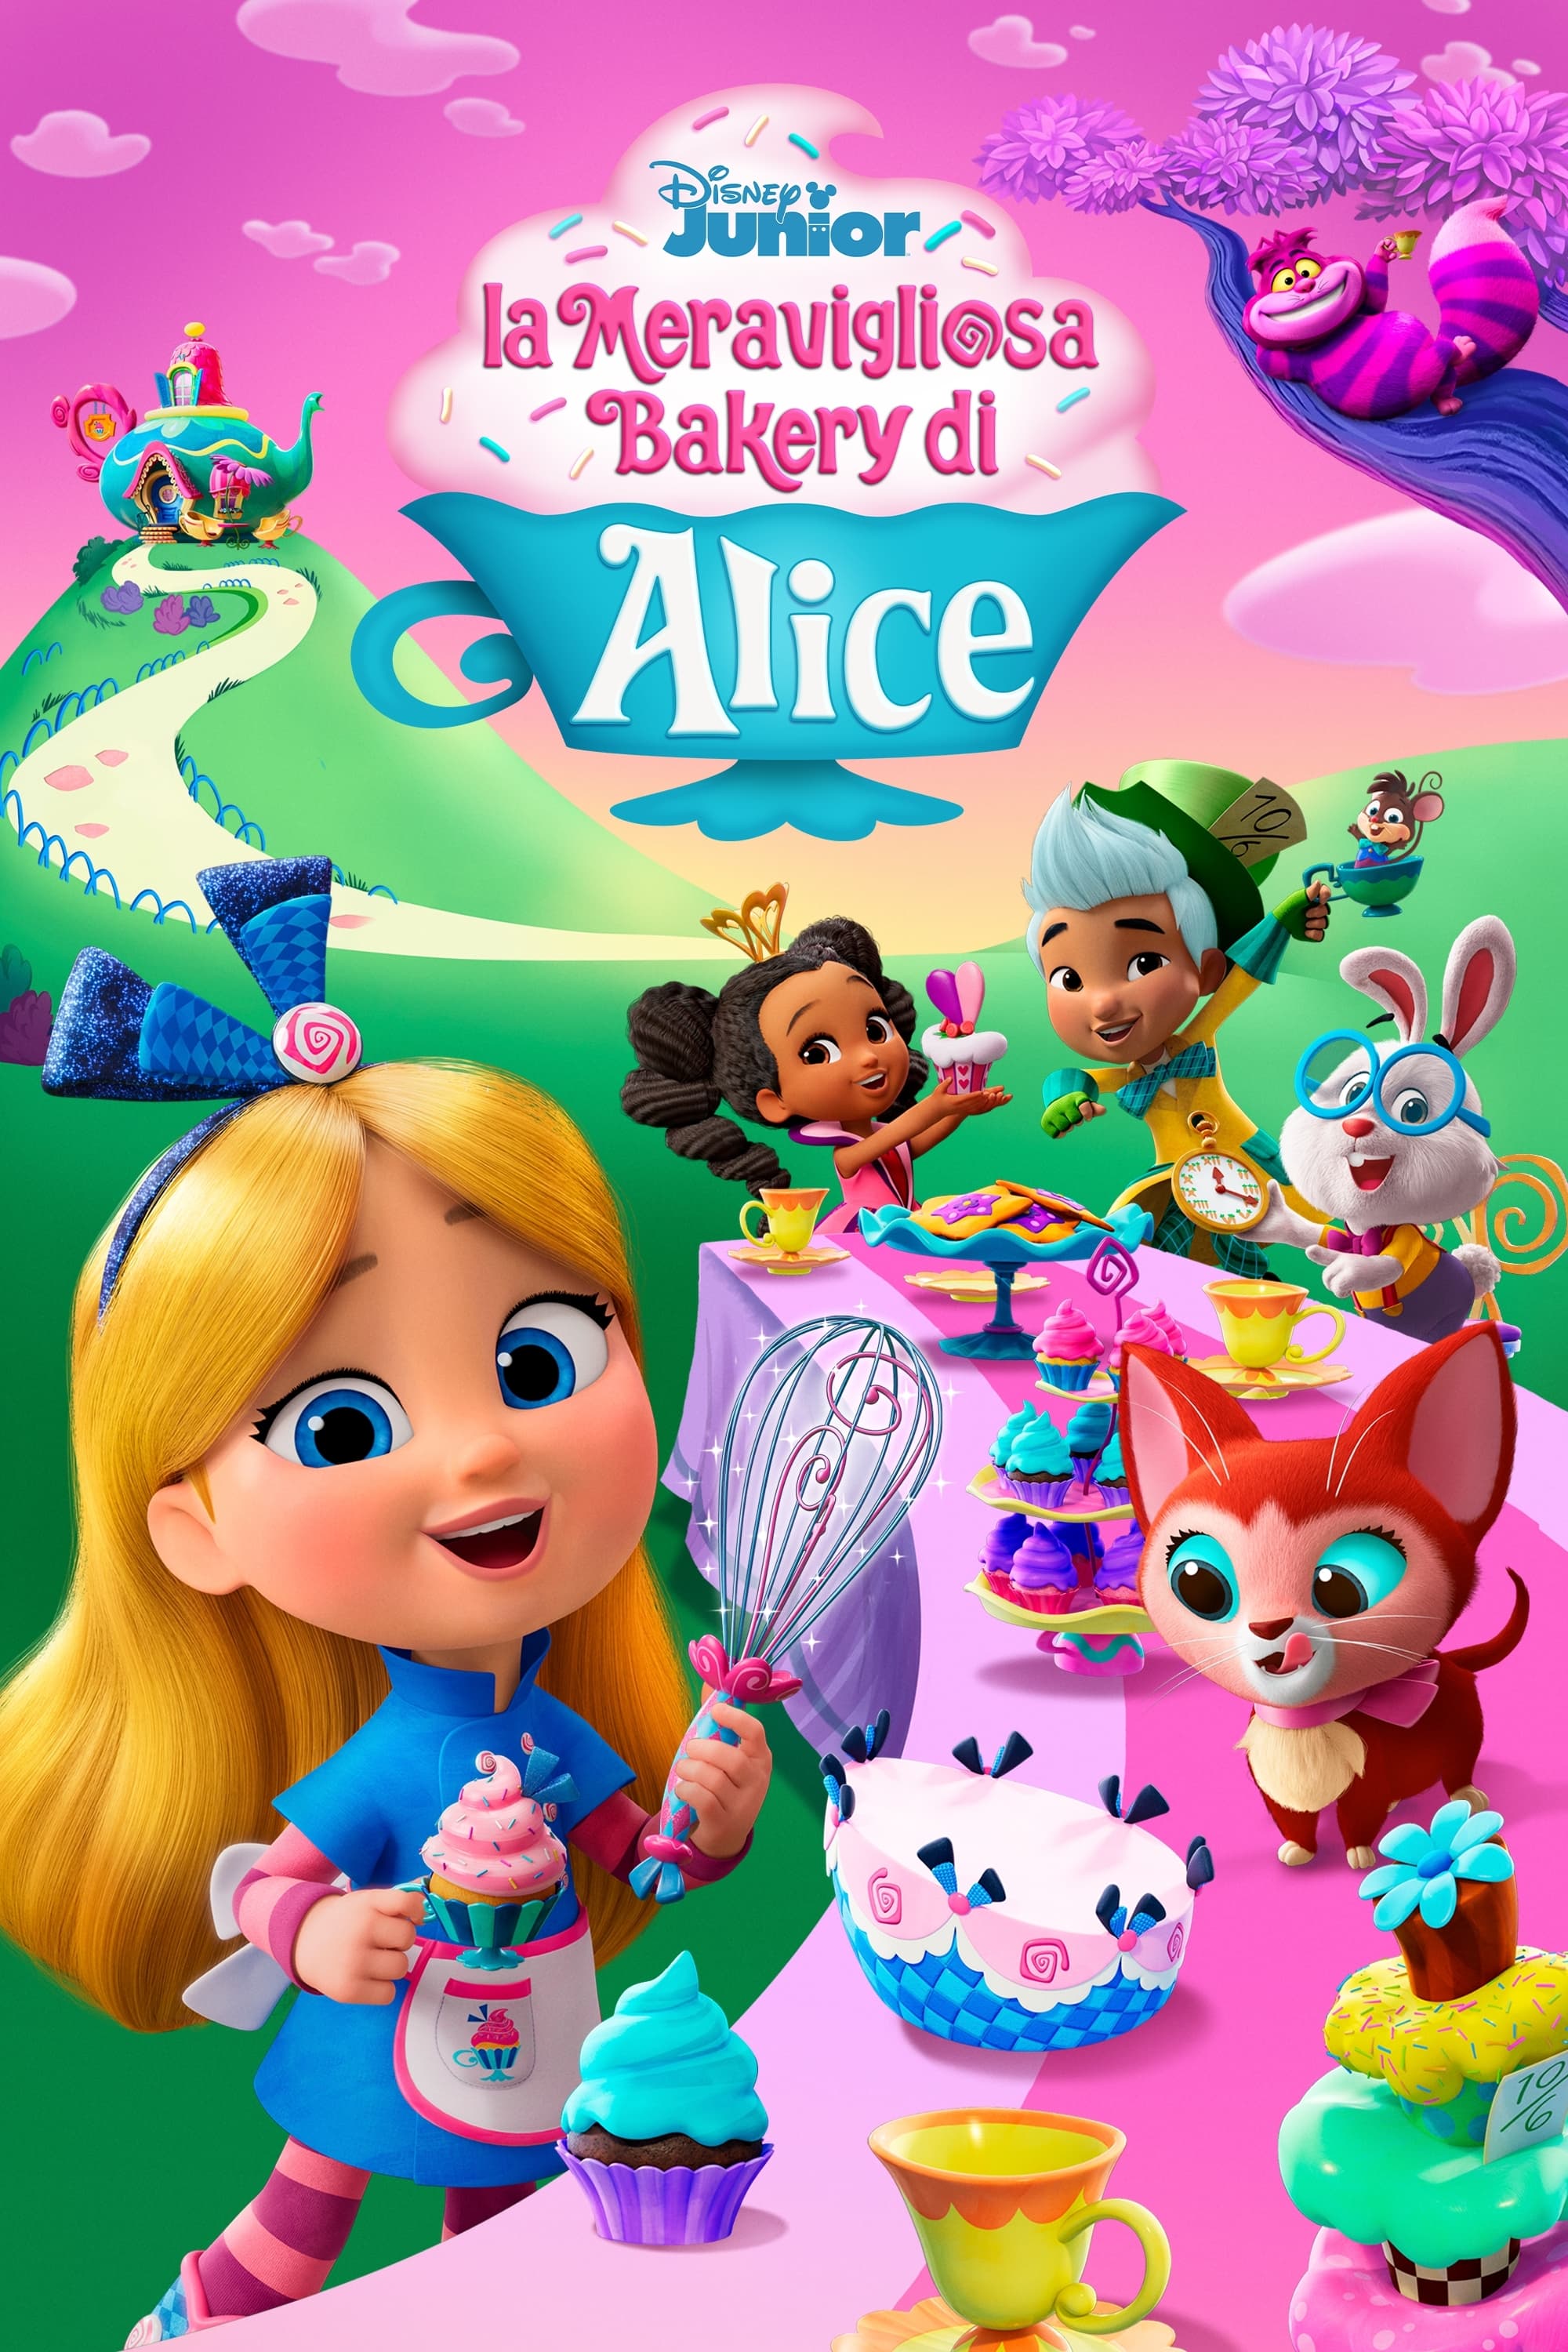 La meravigliosa Bakery di Alice, The Dubbing Database